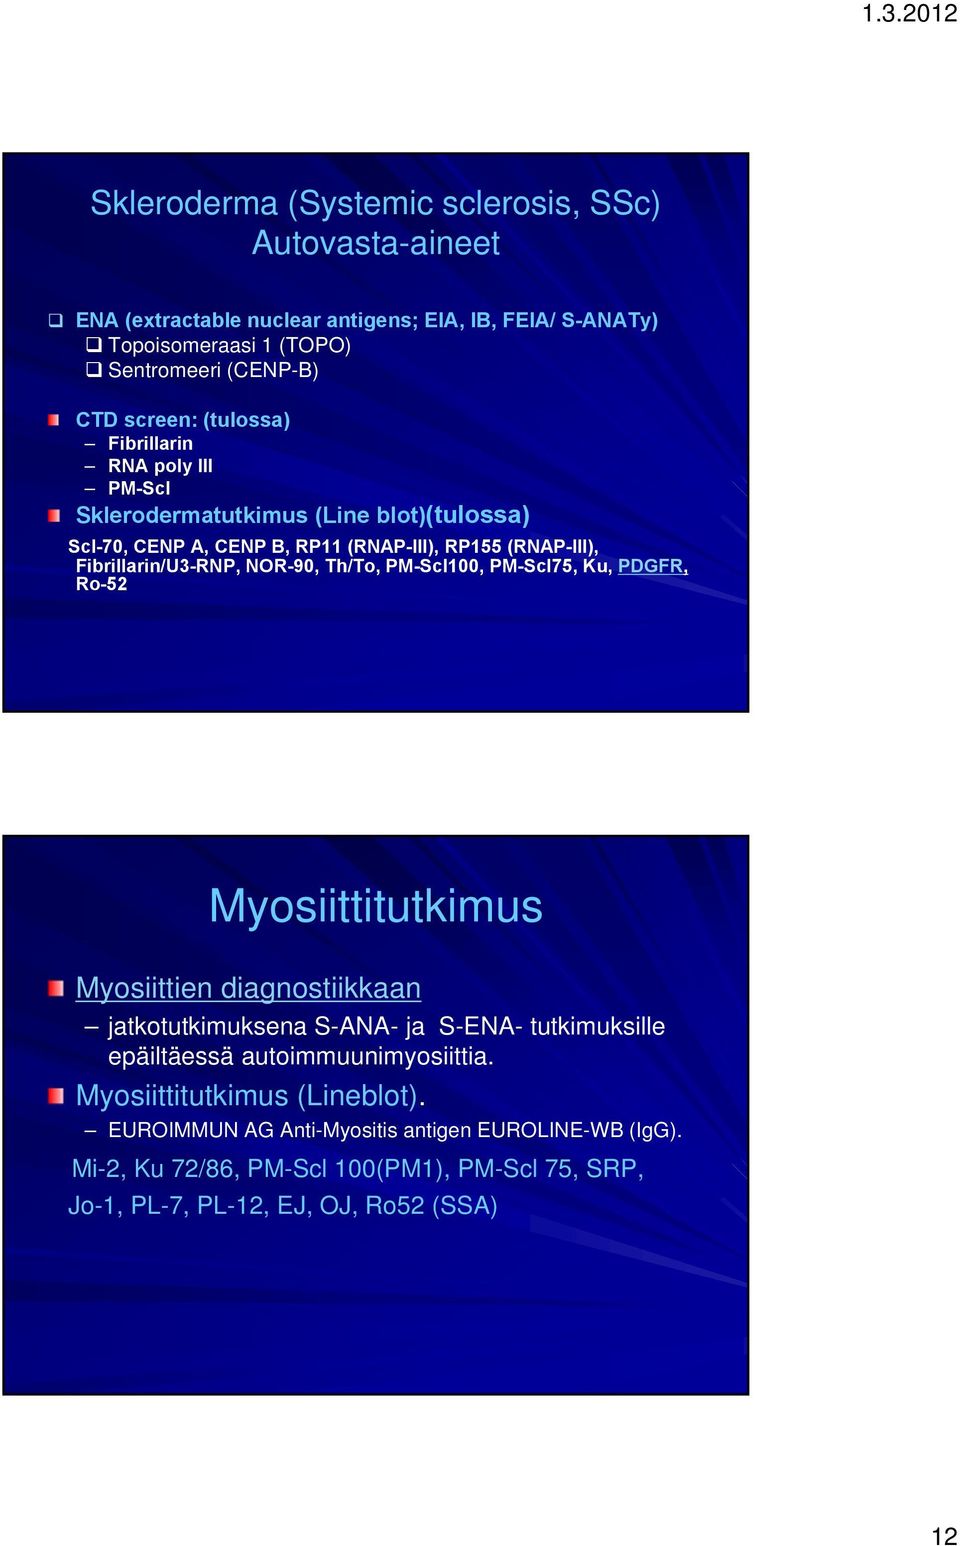 Th/To, PM-Scl100, PM-Scl75, Ku, PDGFR, Ro-52 Myosiittitutkimus Myosiittien diagnostiikkaan jatkotutkimuksena S-ANA- ja S-ENA- tutkimuksille epäiltäessä